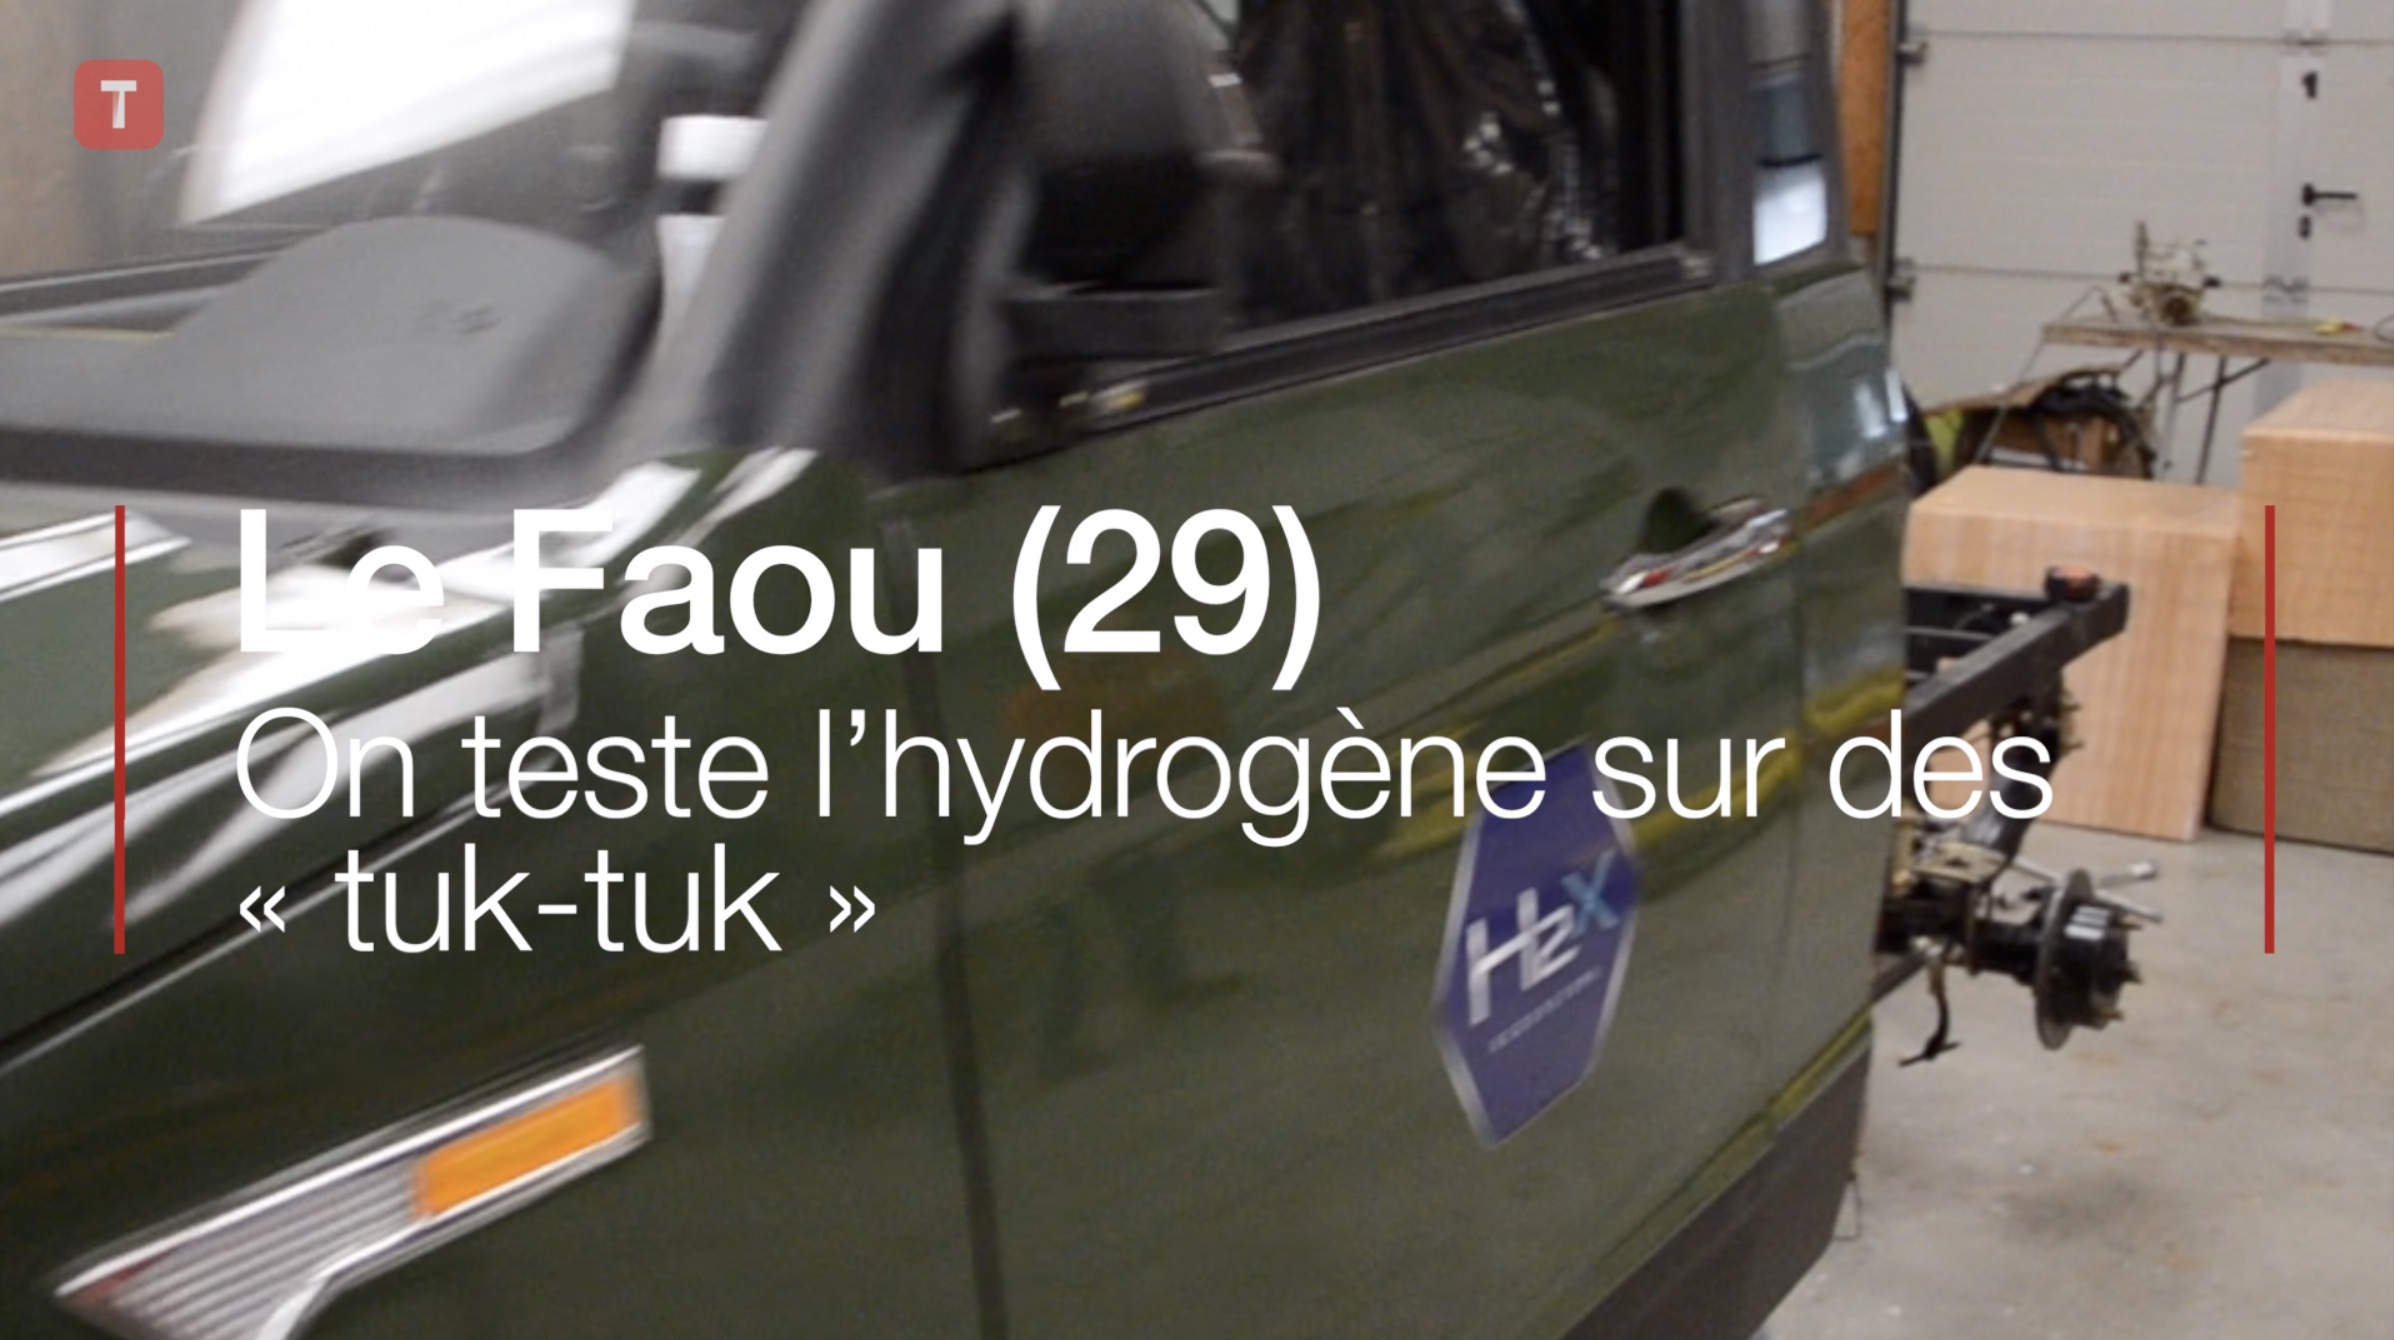 Le Faou (29). On teste l’hydrogène sur des « tuk-tuk »  (Le Télégramme)